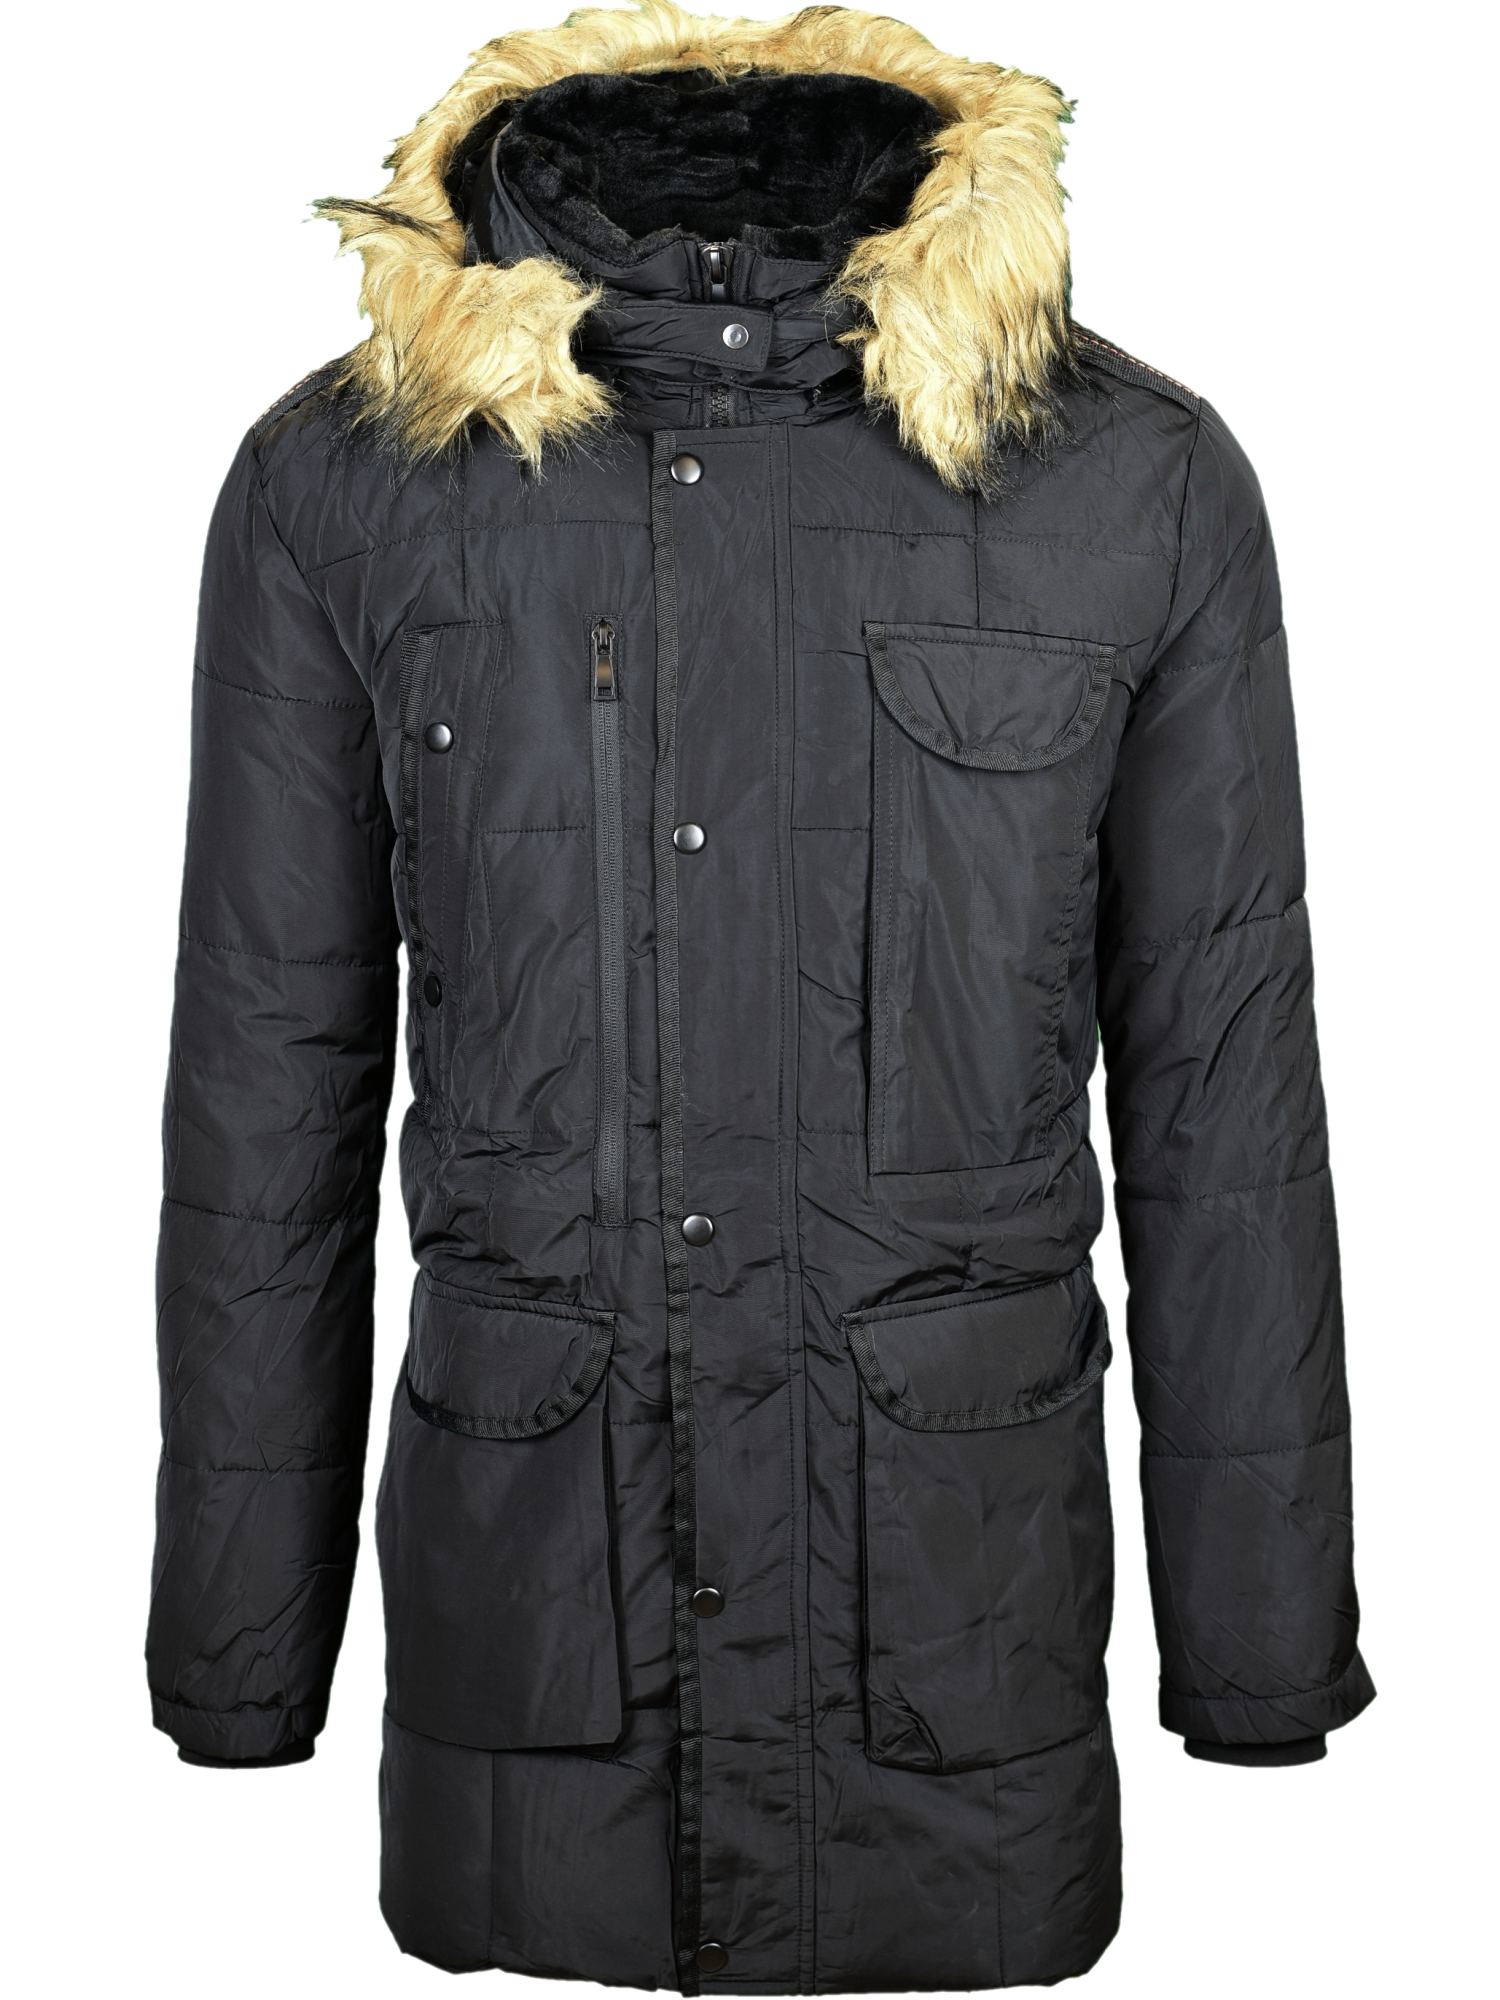 Zimná bunda čierna, P489